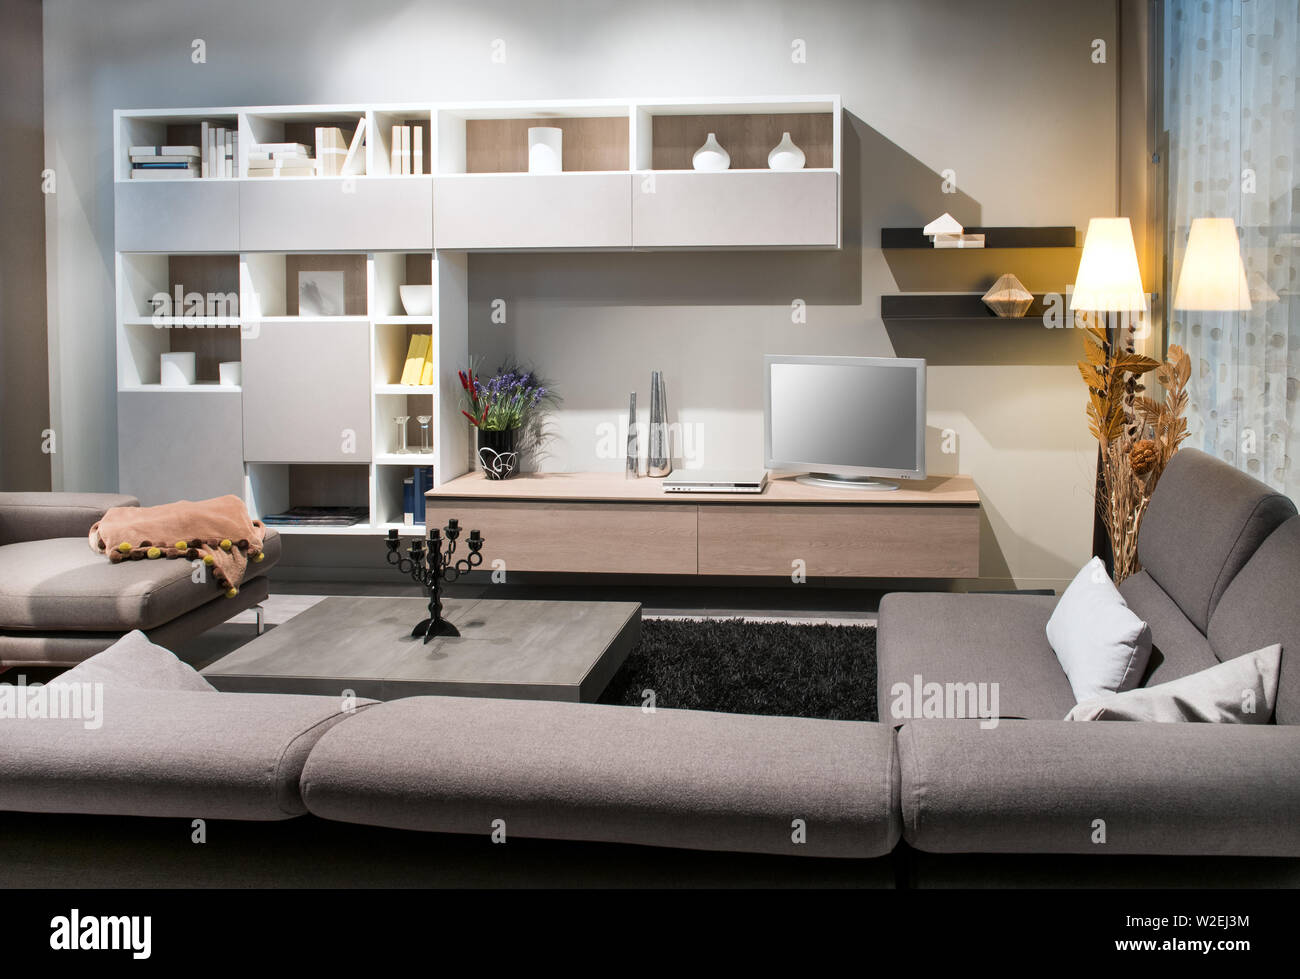 Salón Moderno interior con tapizados cómodos sofás marrones hacia una vitrina y televisión iluminada por abajo y una lámpara de luces Foto de stock